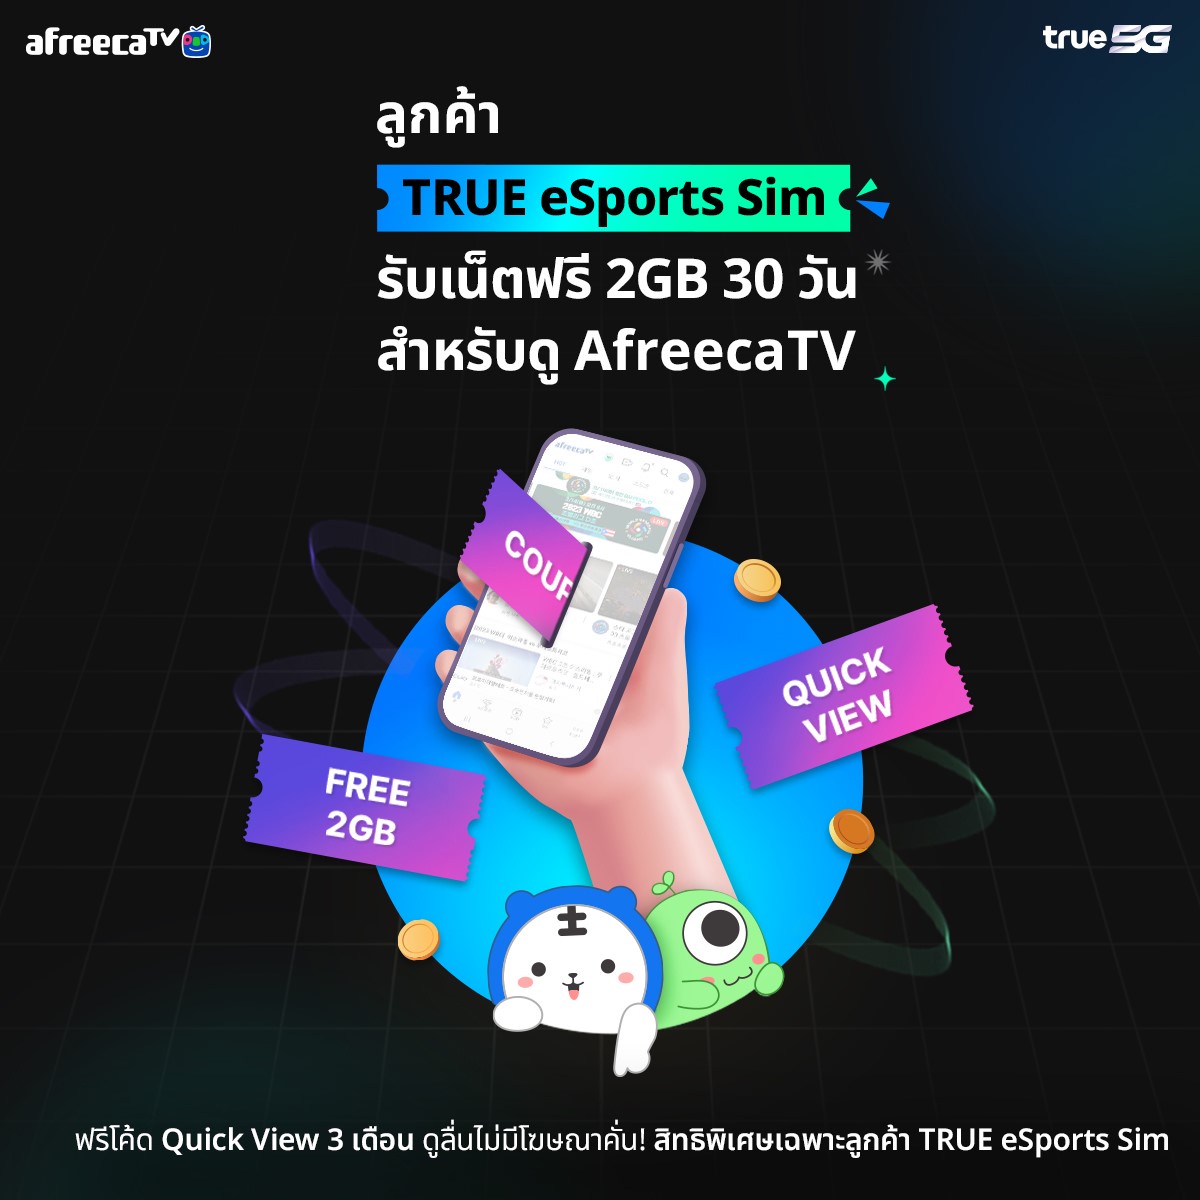 โปรโมชั่นสุดพิเศษเฉพาะลูกค้า True 5G eSports sim ดูคอนเทนต์ใน AfreecaTV แบบไม่มีโฆษณาคั่น เล่นเน็ตฟรี 2GB นาน 30 วัน!